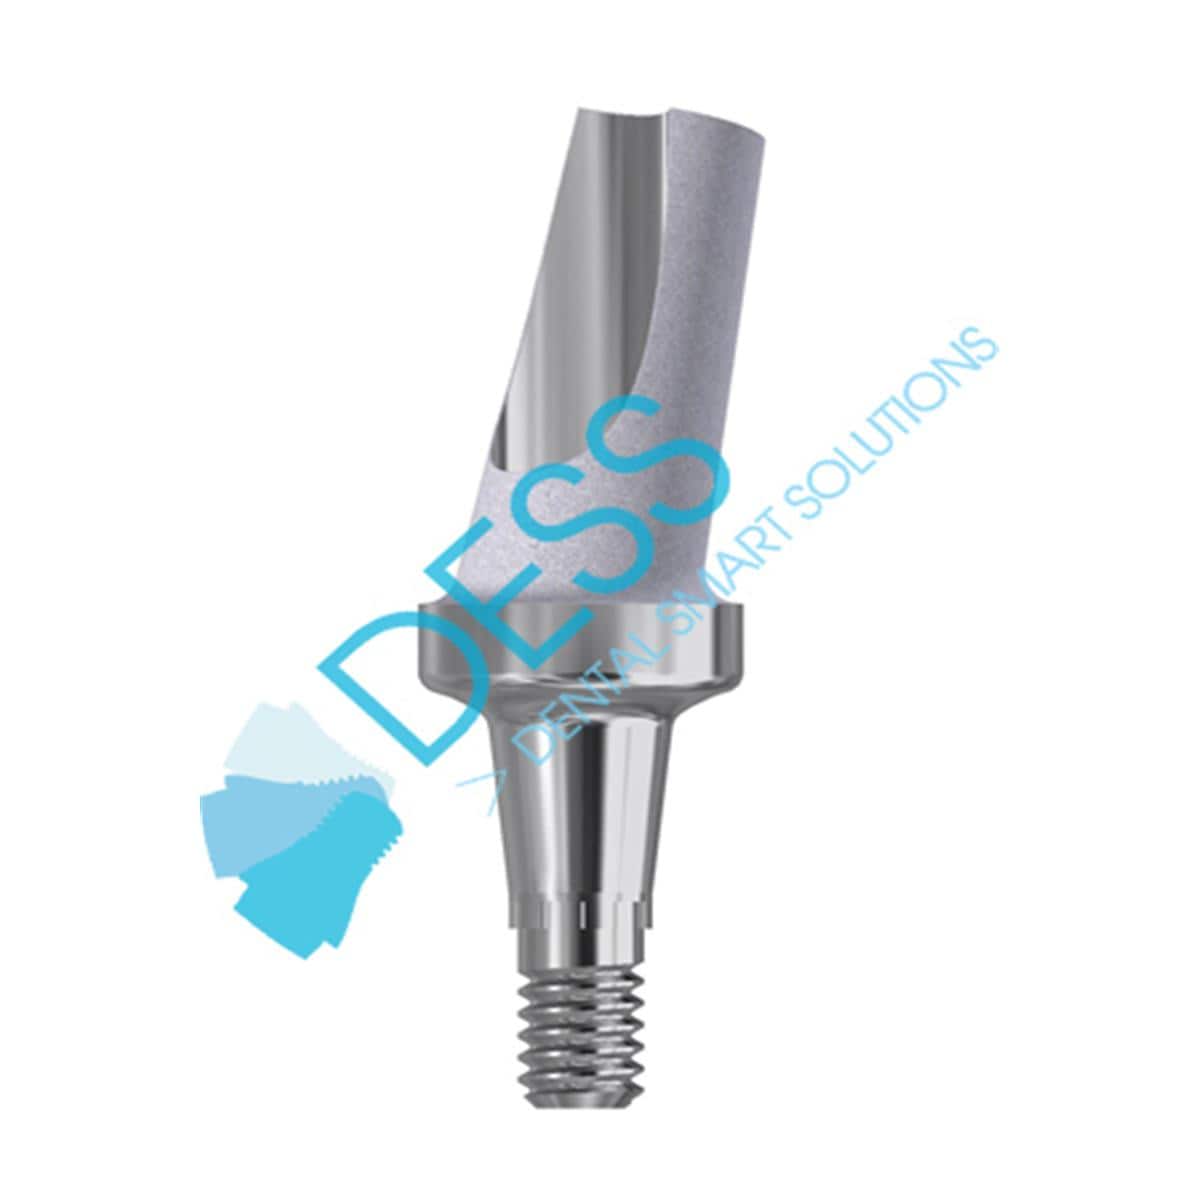 Titanabutment - kompatibel mit Dentsply Ankylos® - Höhe 1,5 mm, 15° gewinkelt, mit Rotationsschutz